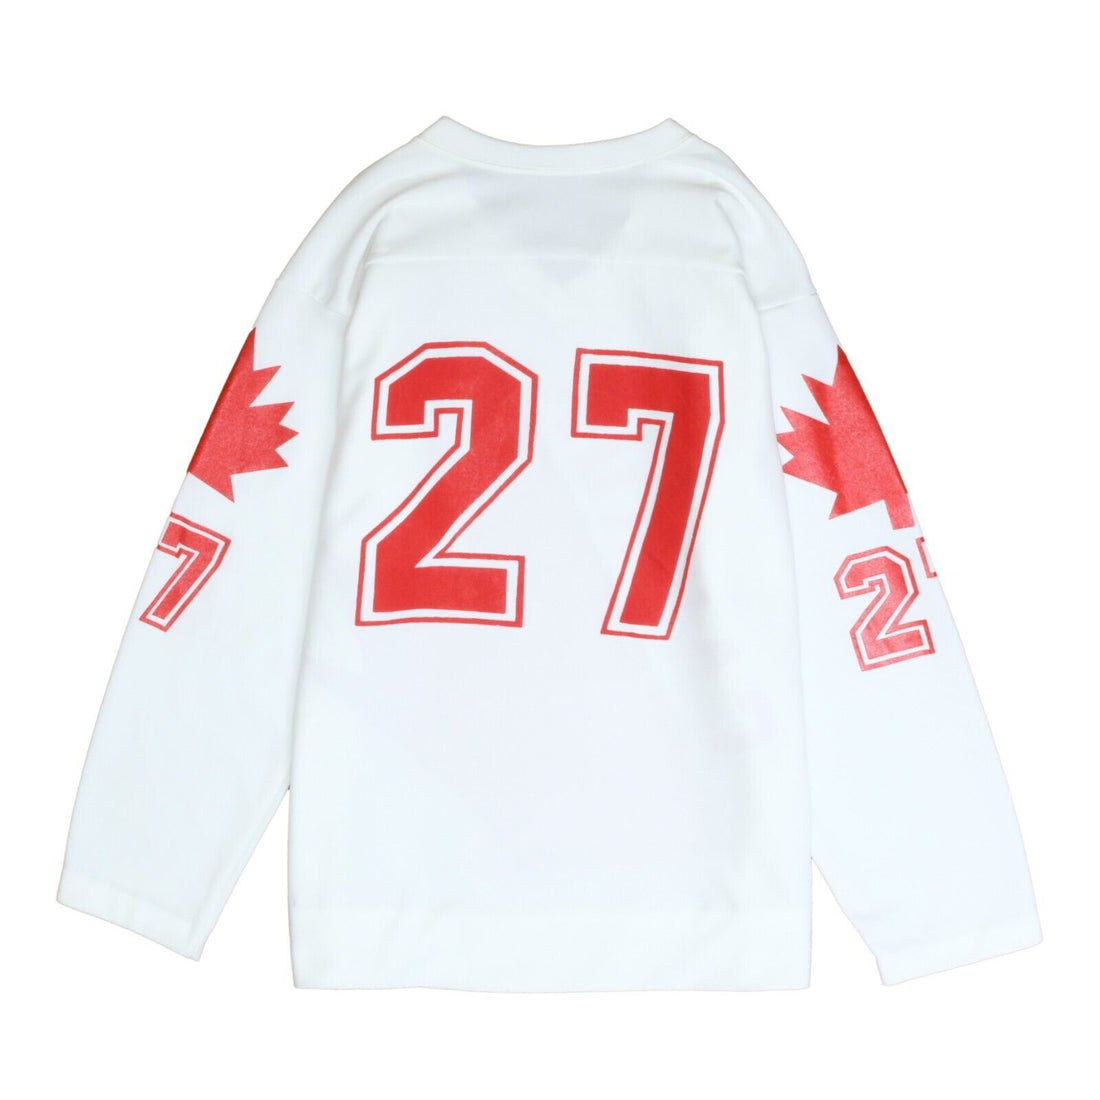 Vintage Team Canada Bauer Hockey Jersey Size XL White 90s IIHF